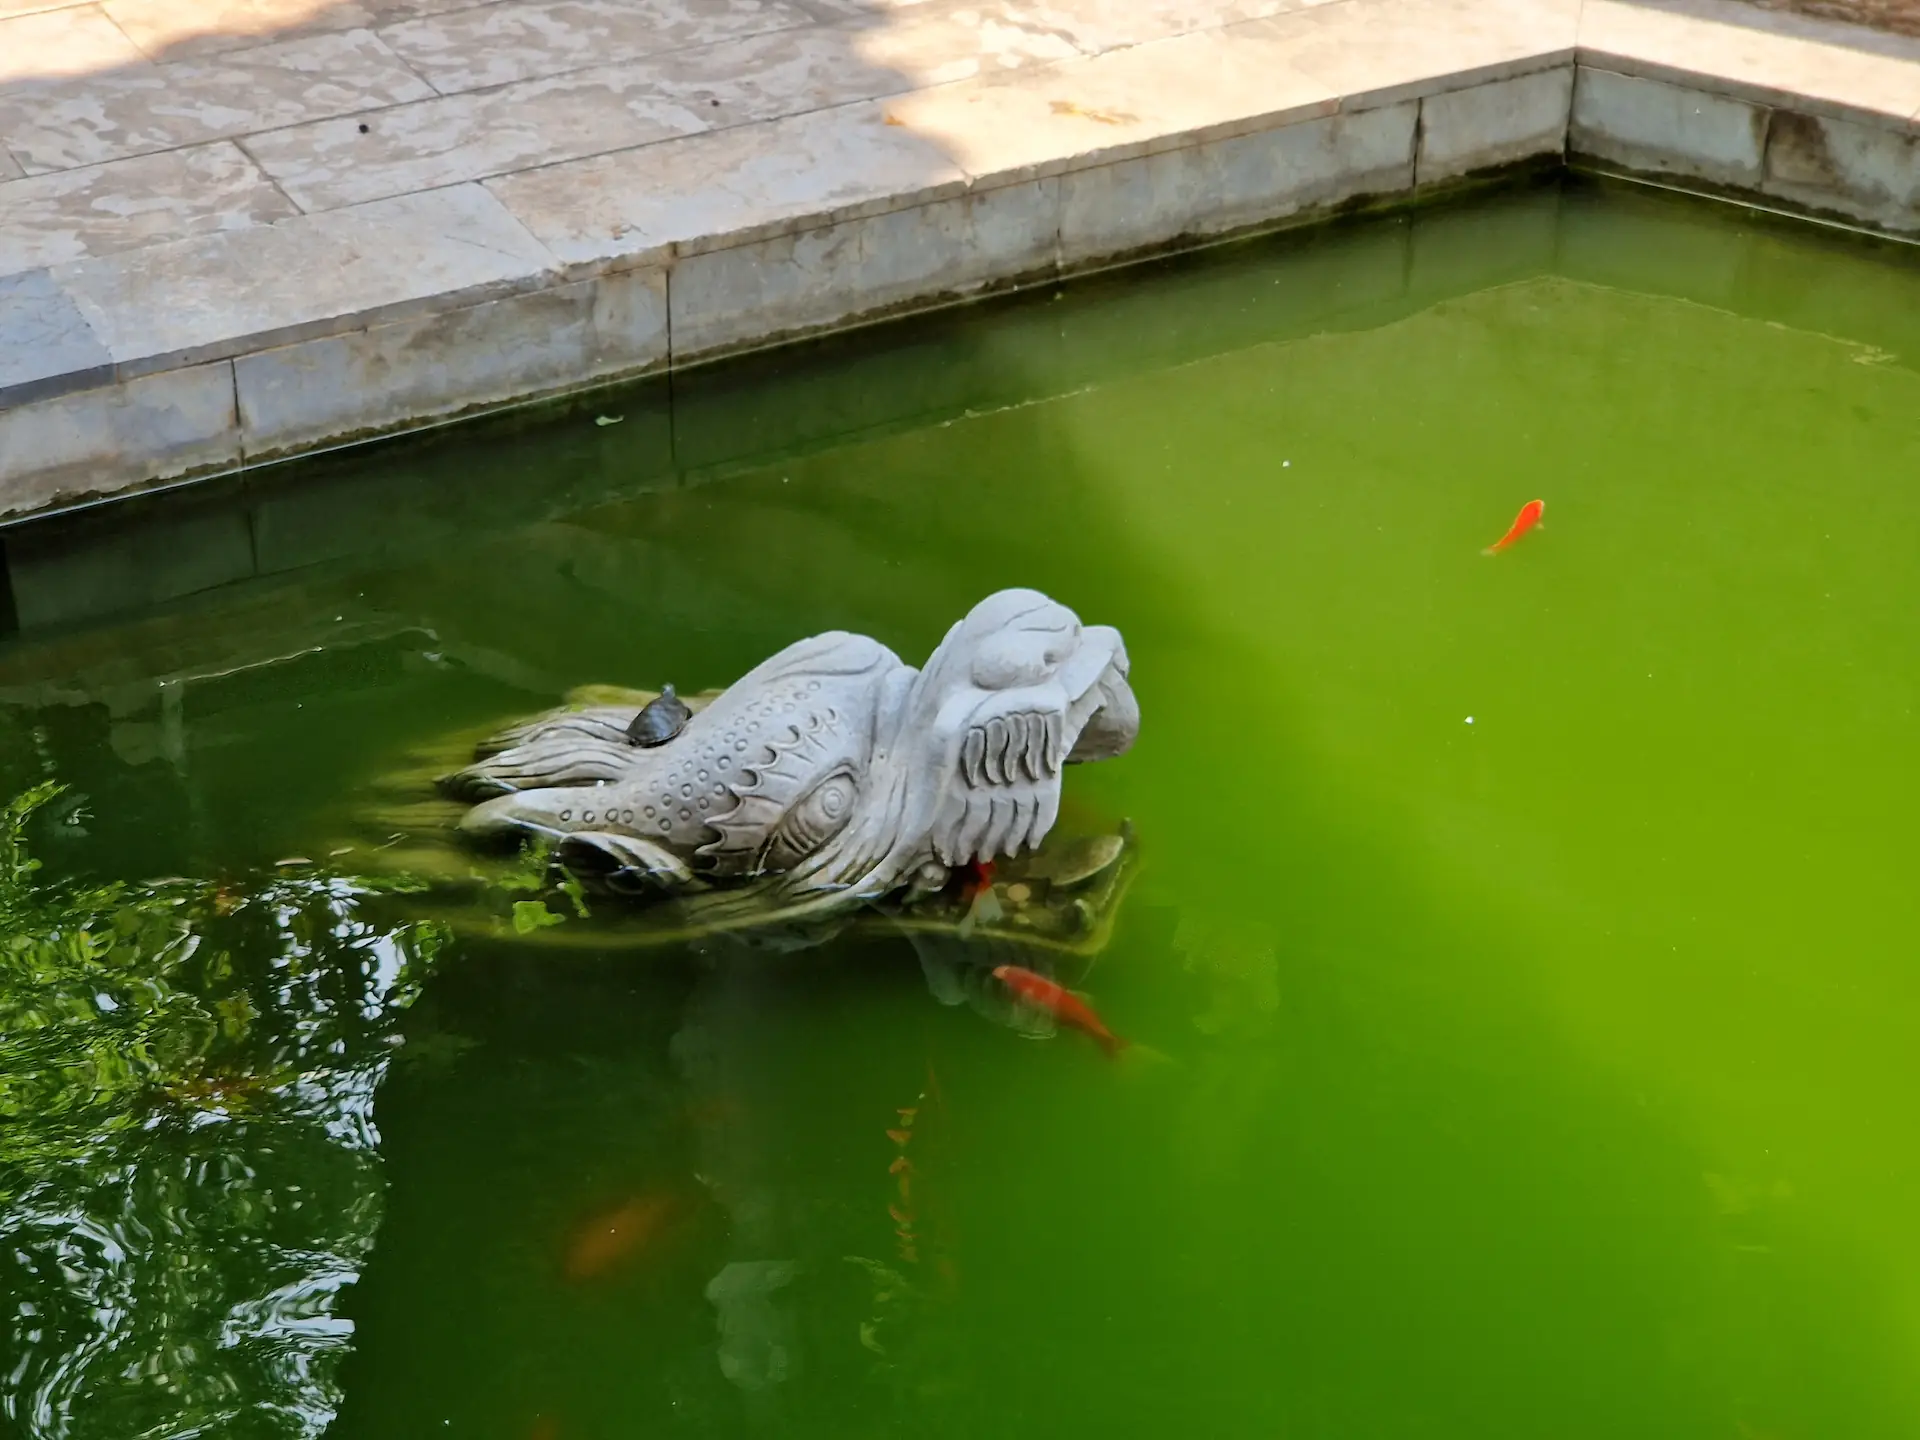 Dans un petit étang de temple nagent poissons et tortues. On aperçoit un poisson se réfugier dans la gueule d'une statue de dragon alors qu'une petite tortue fait une pause sur sa tête.